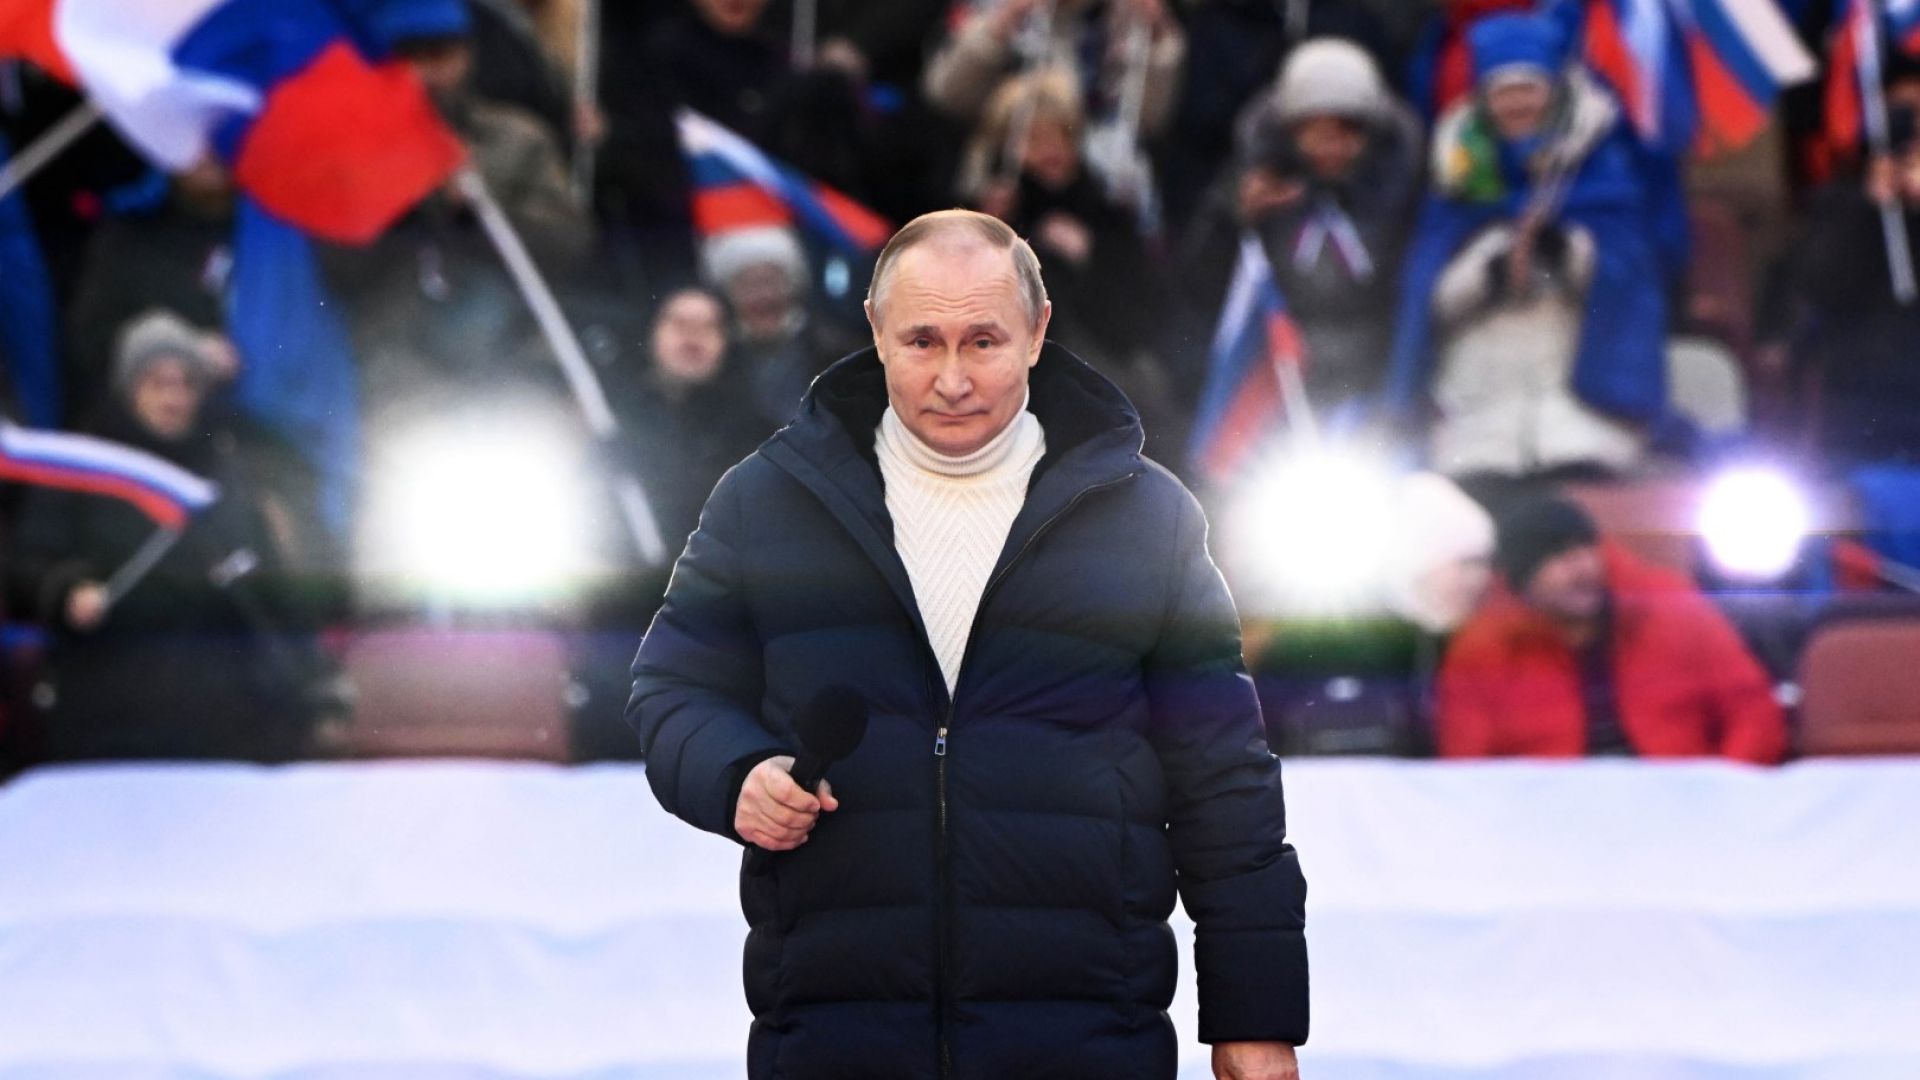 Путин пълни Лужники на 22 февруари. Макрон може да го лиши от ордена на почетния легион